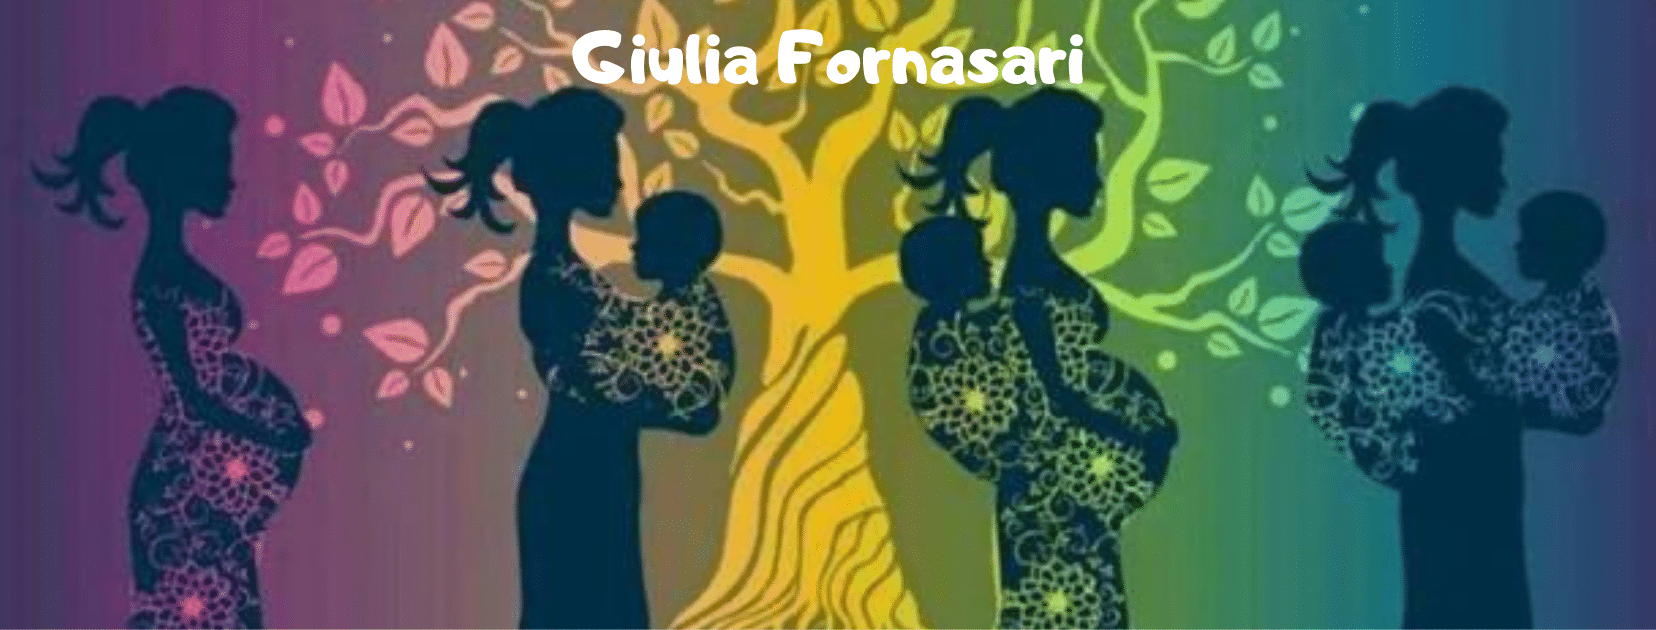 Giulia Fornasari - Fascioteca Stretti Legami